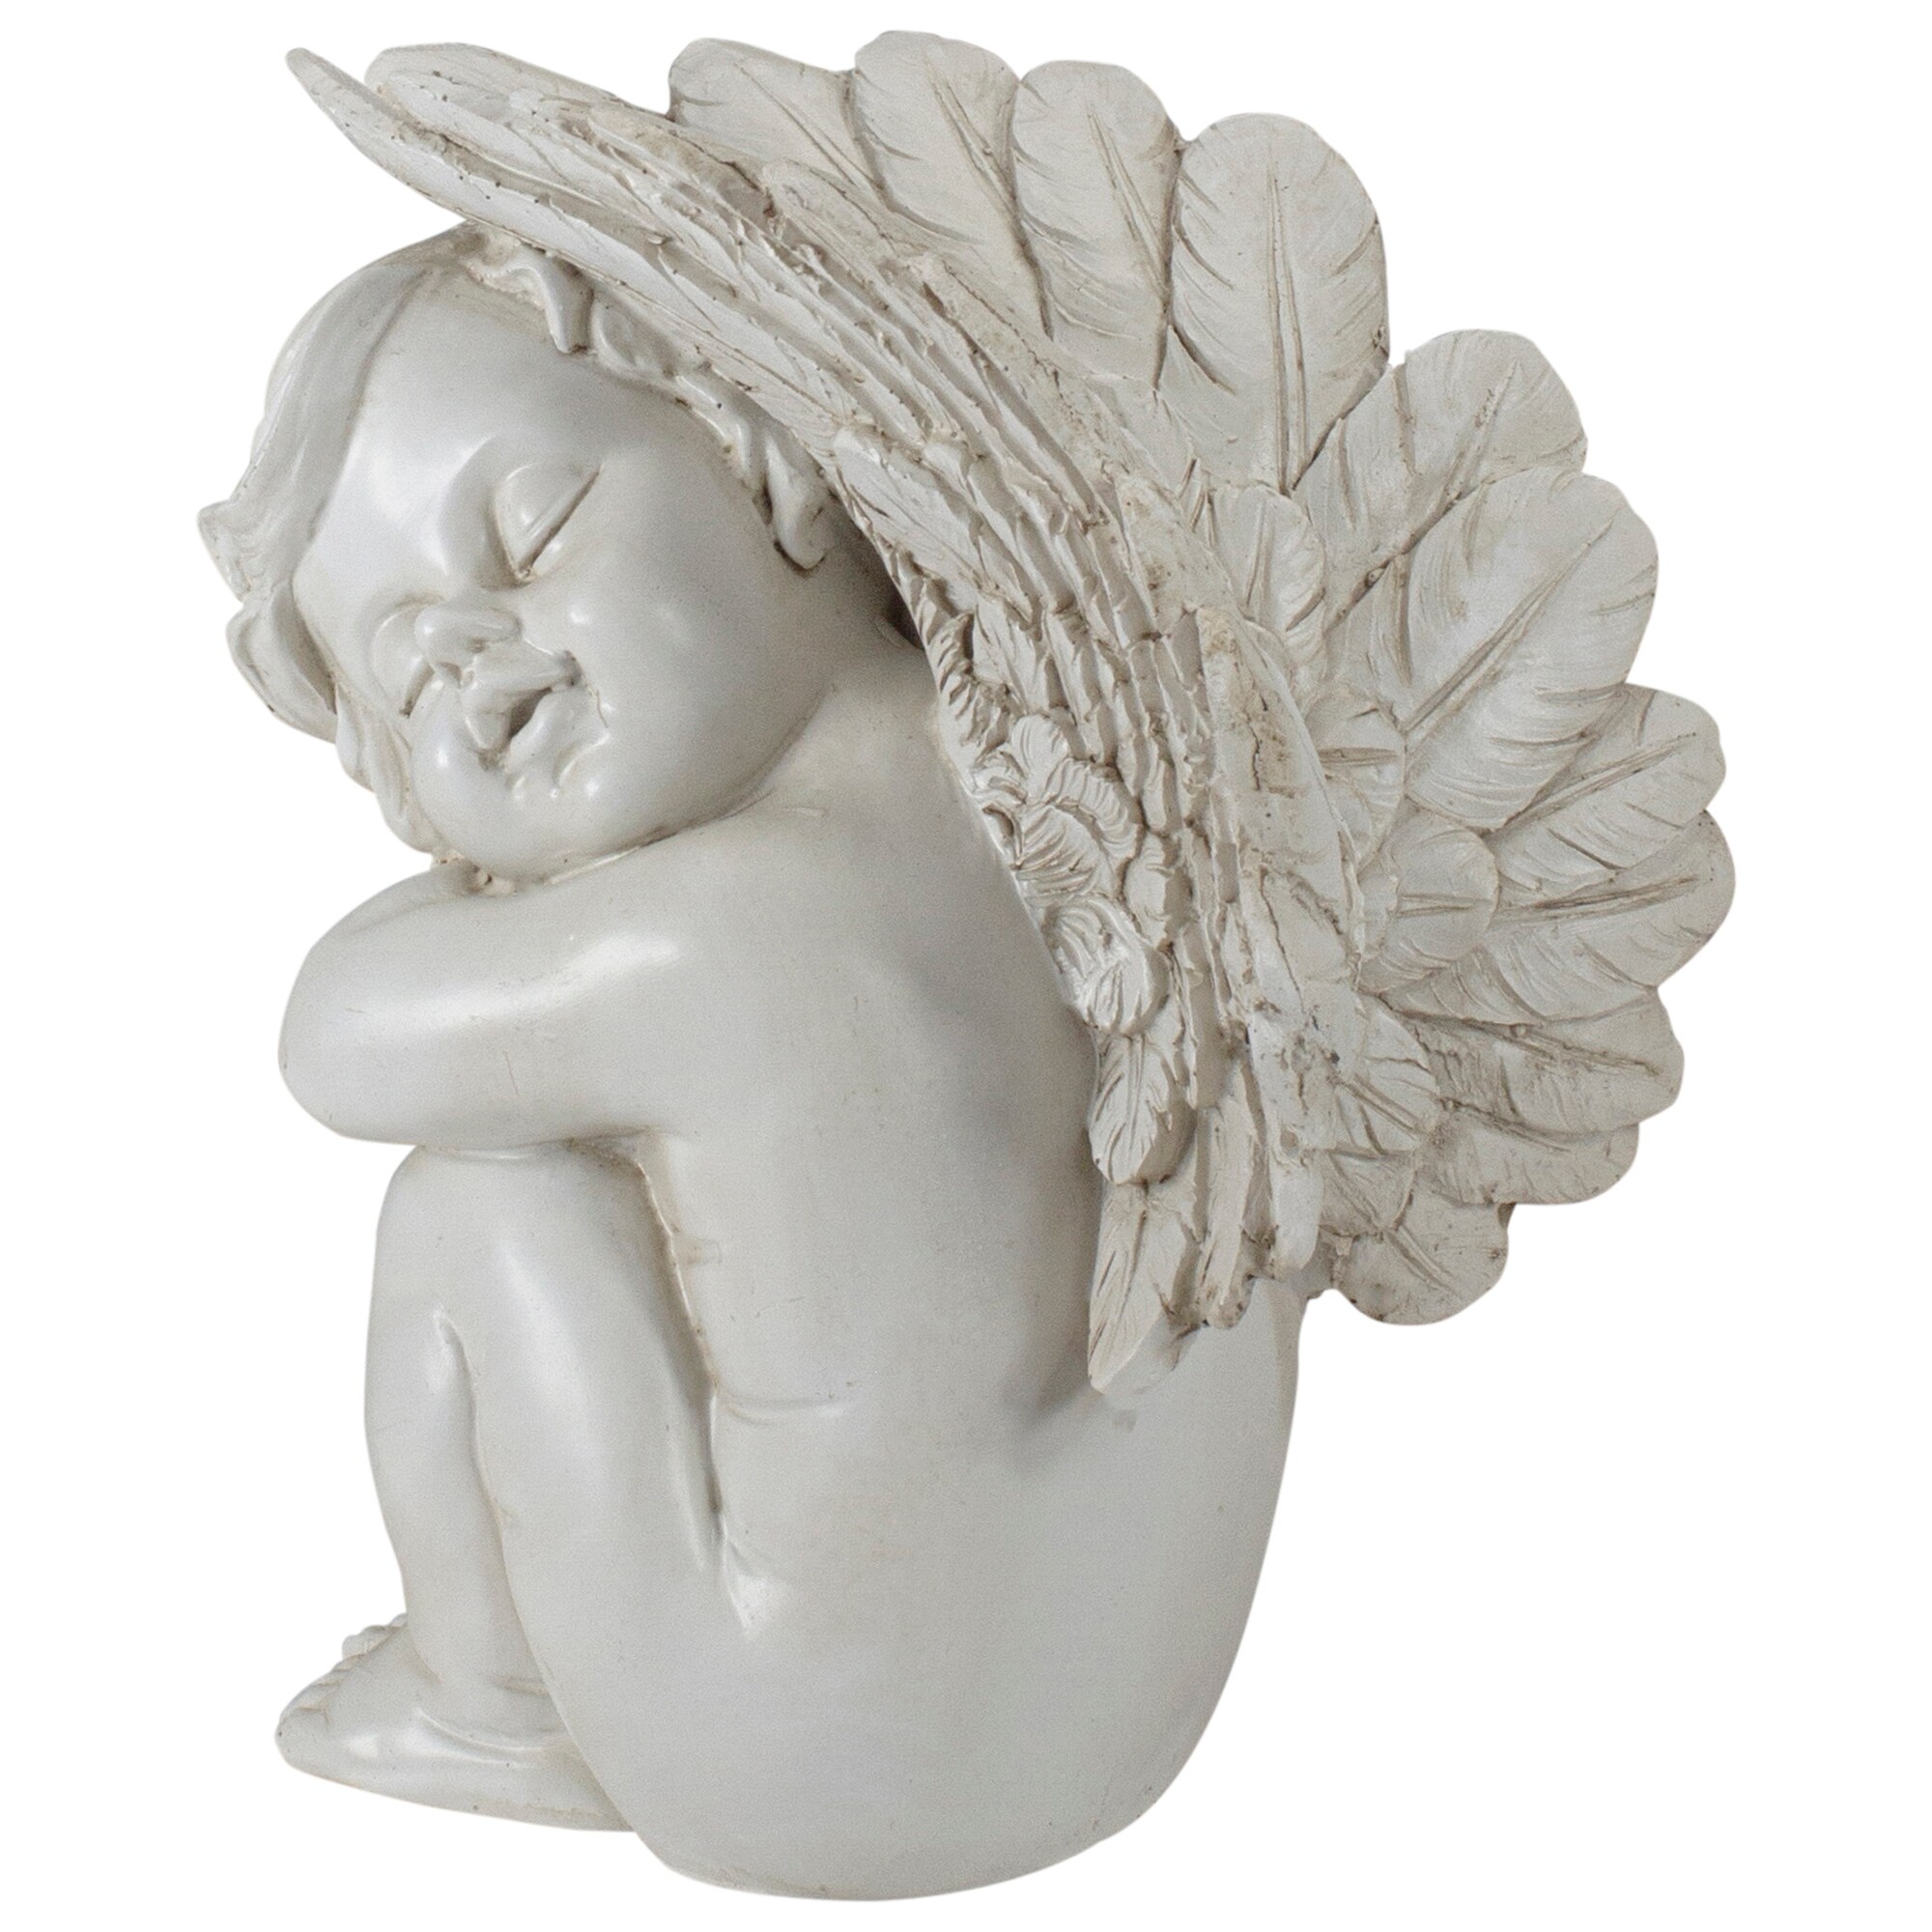 7.5" Ivory Left Facing Sleeping Cherub Angel Outdoor Garden Statue - image 5 of 5